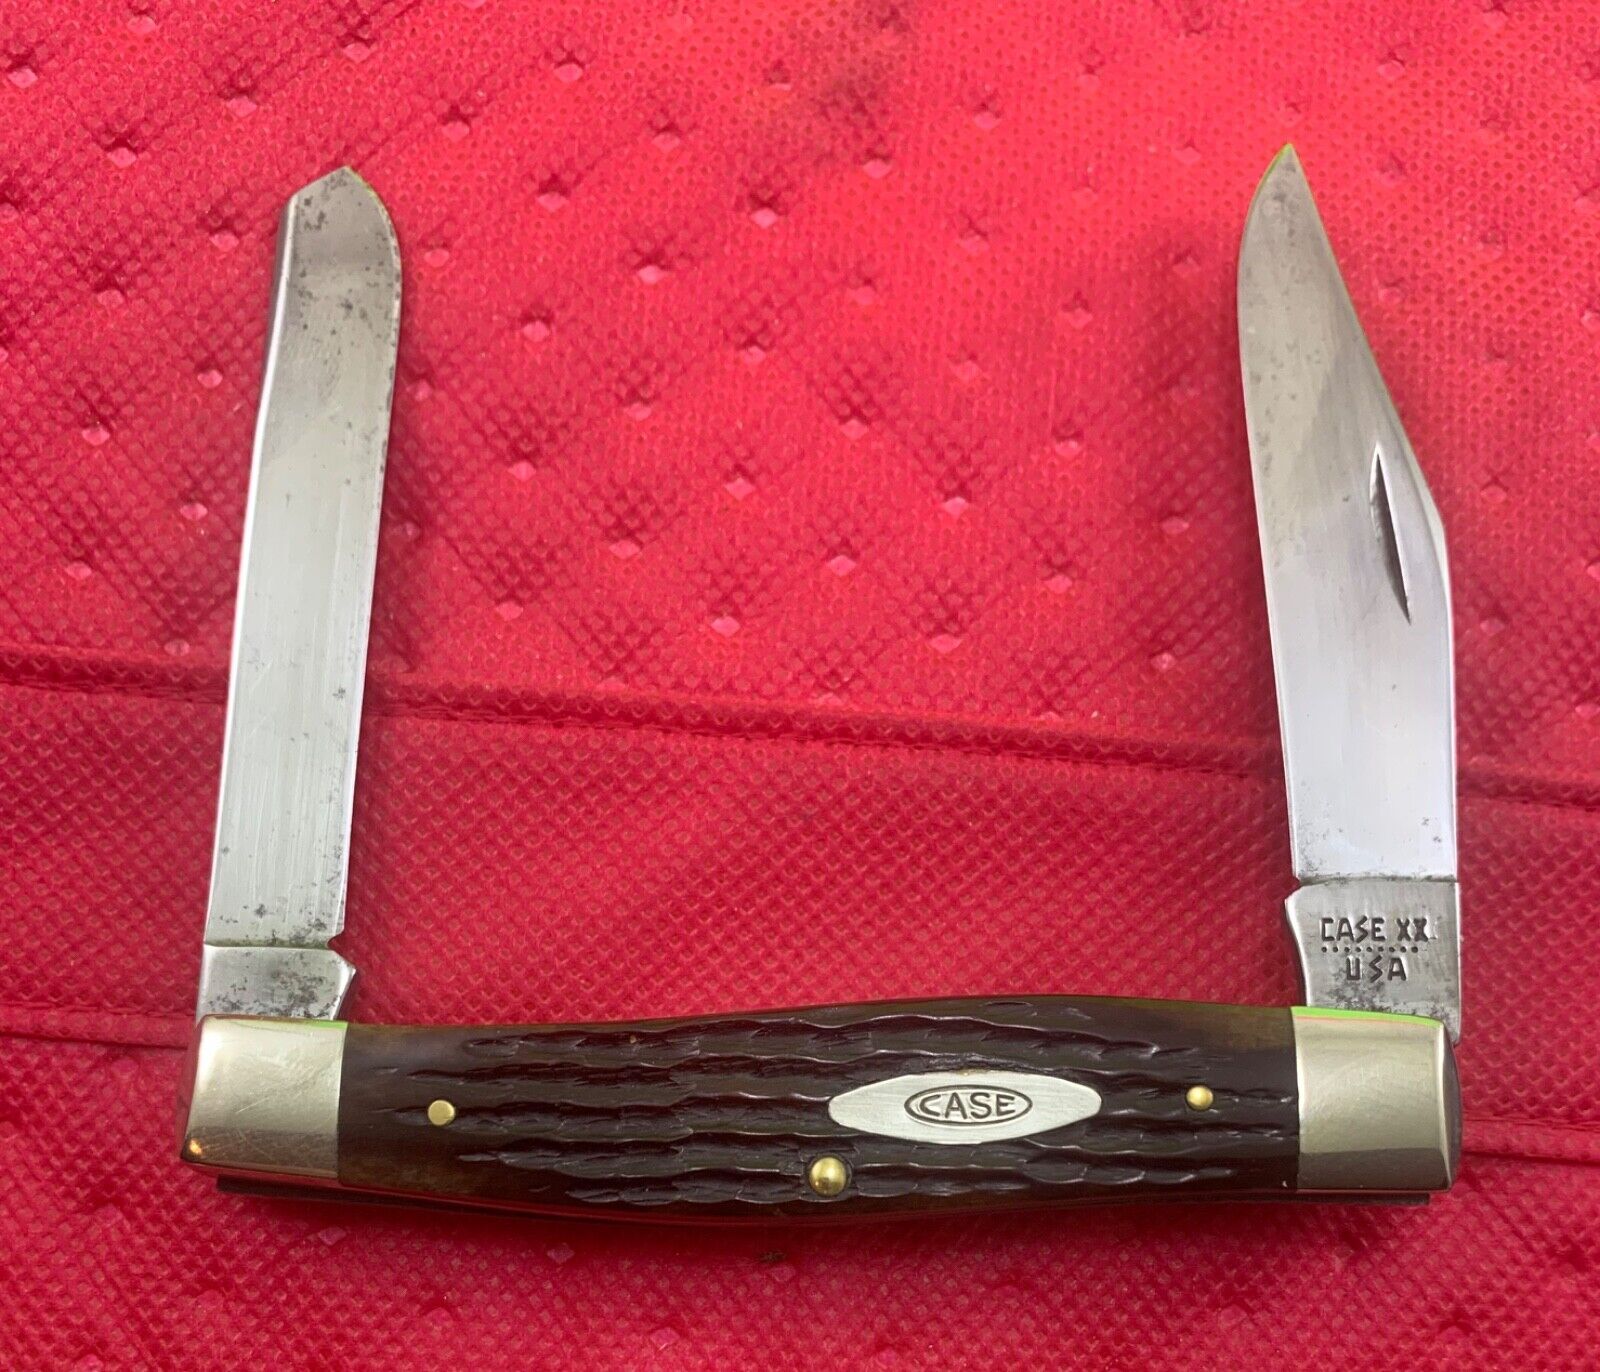 1981 CASE MOOSE KNIFE NEVER USED # 6275 SP